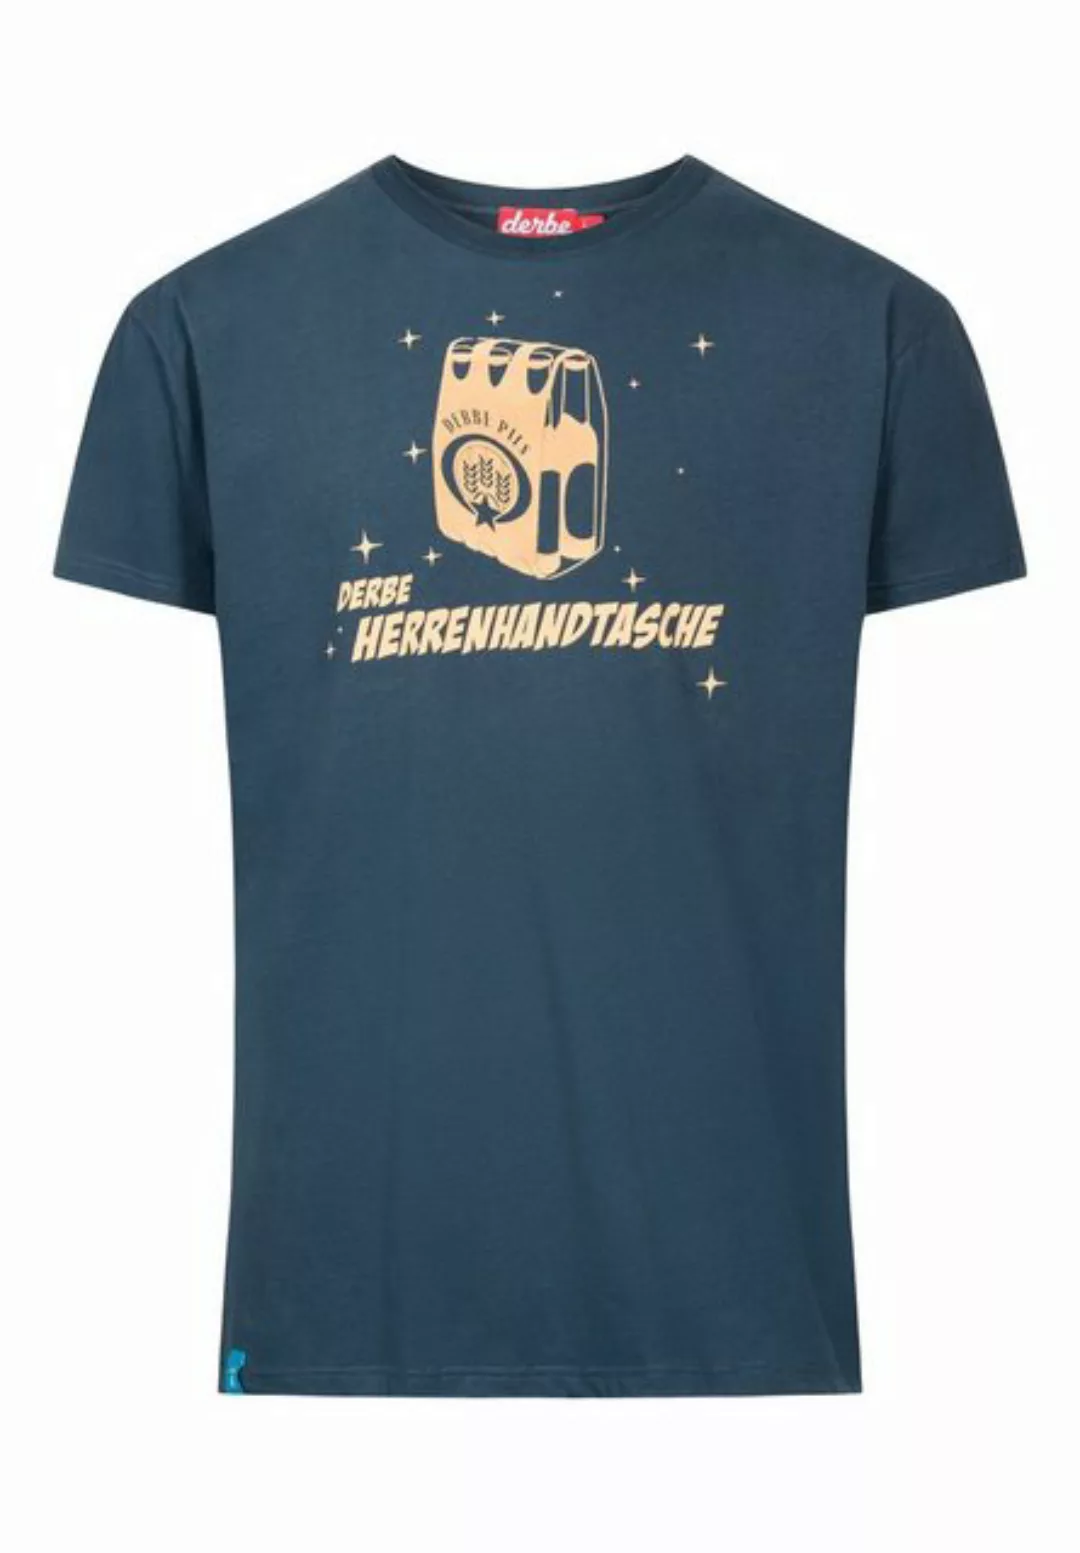 Derbe T-Shirt T-Shirt Herrenhandtasche günstig online kaufen